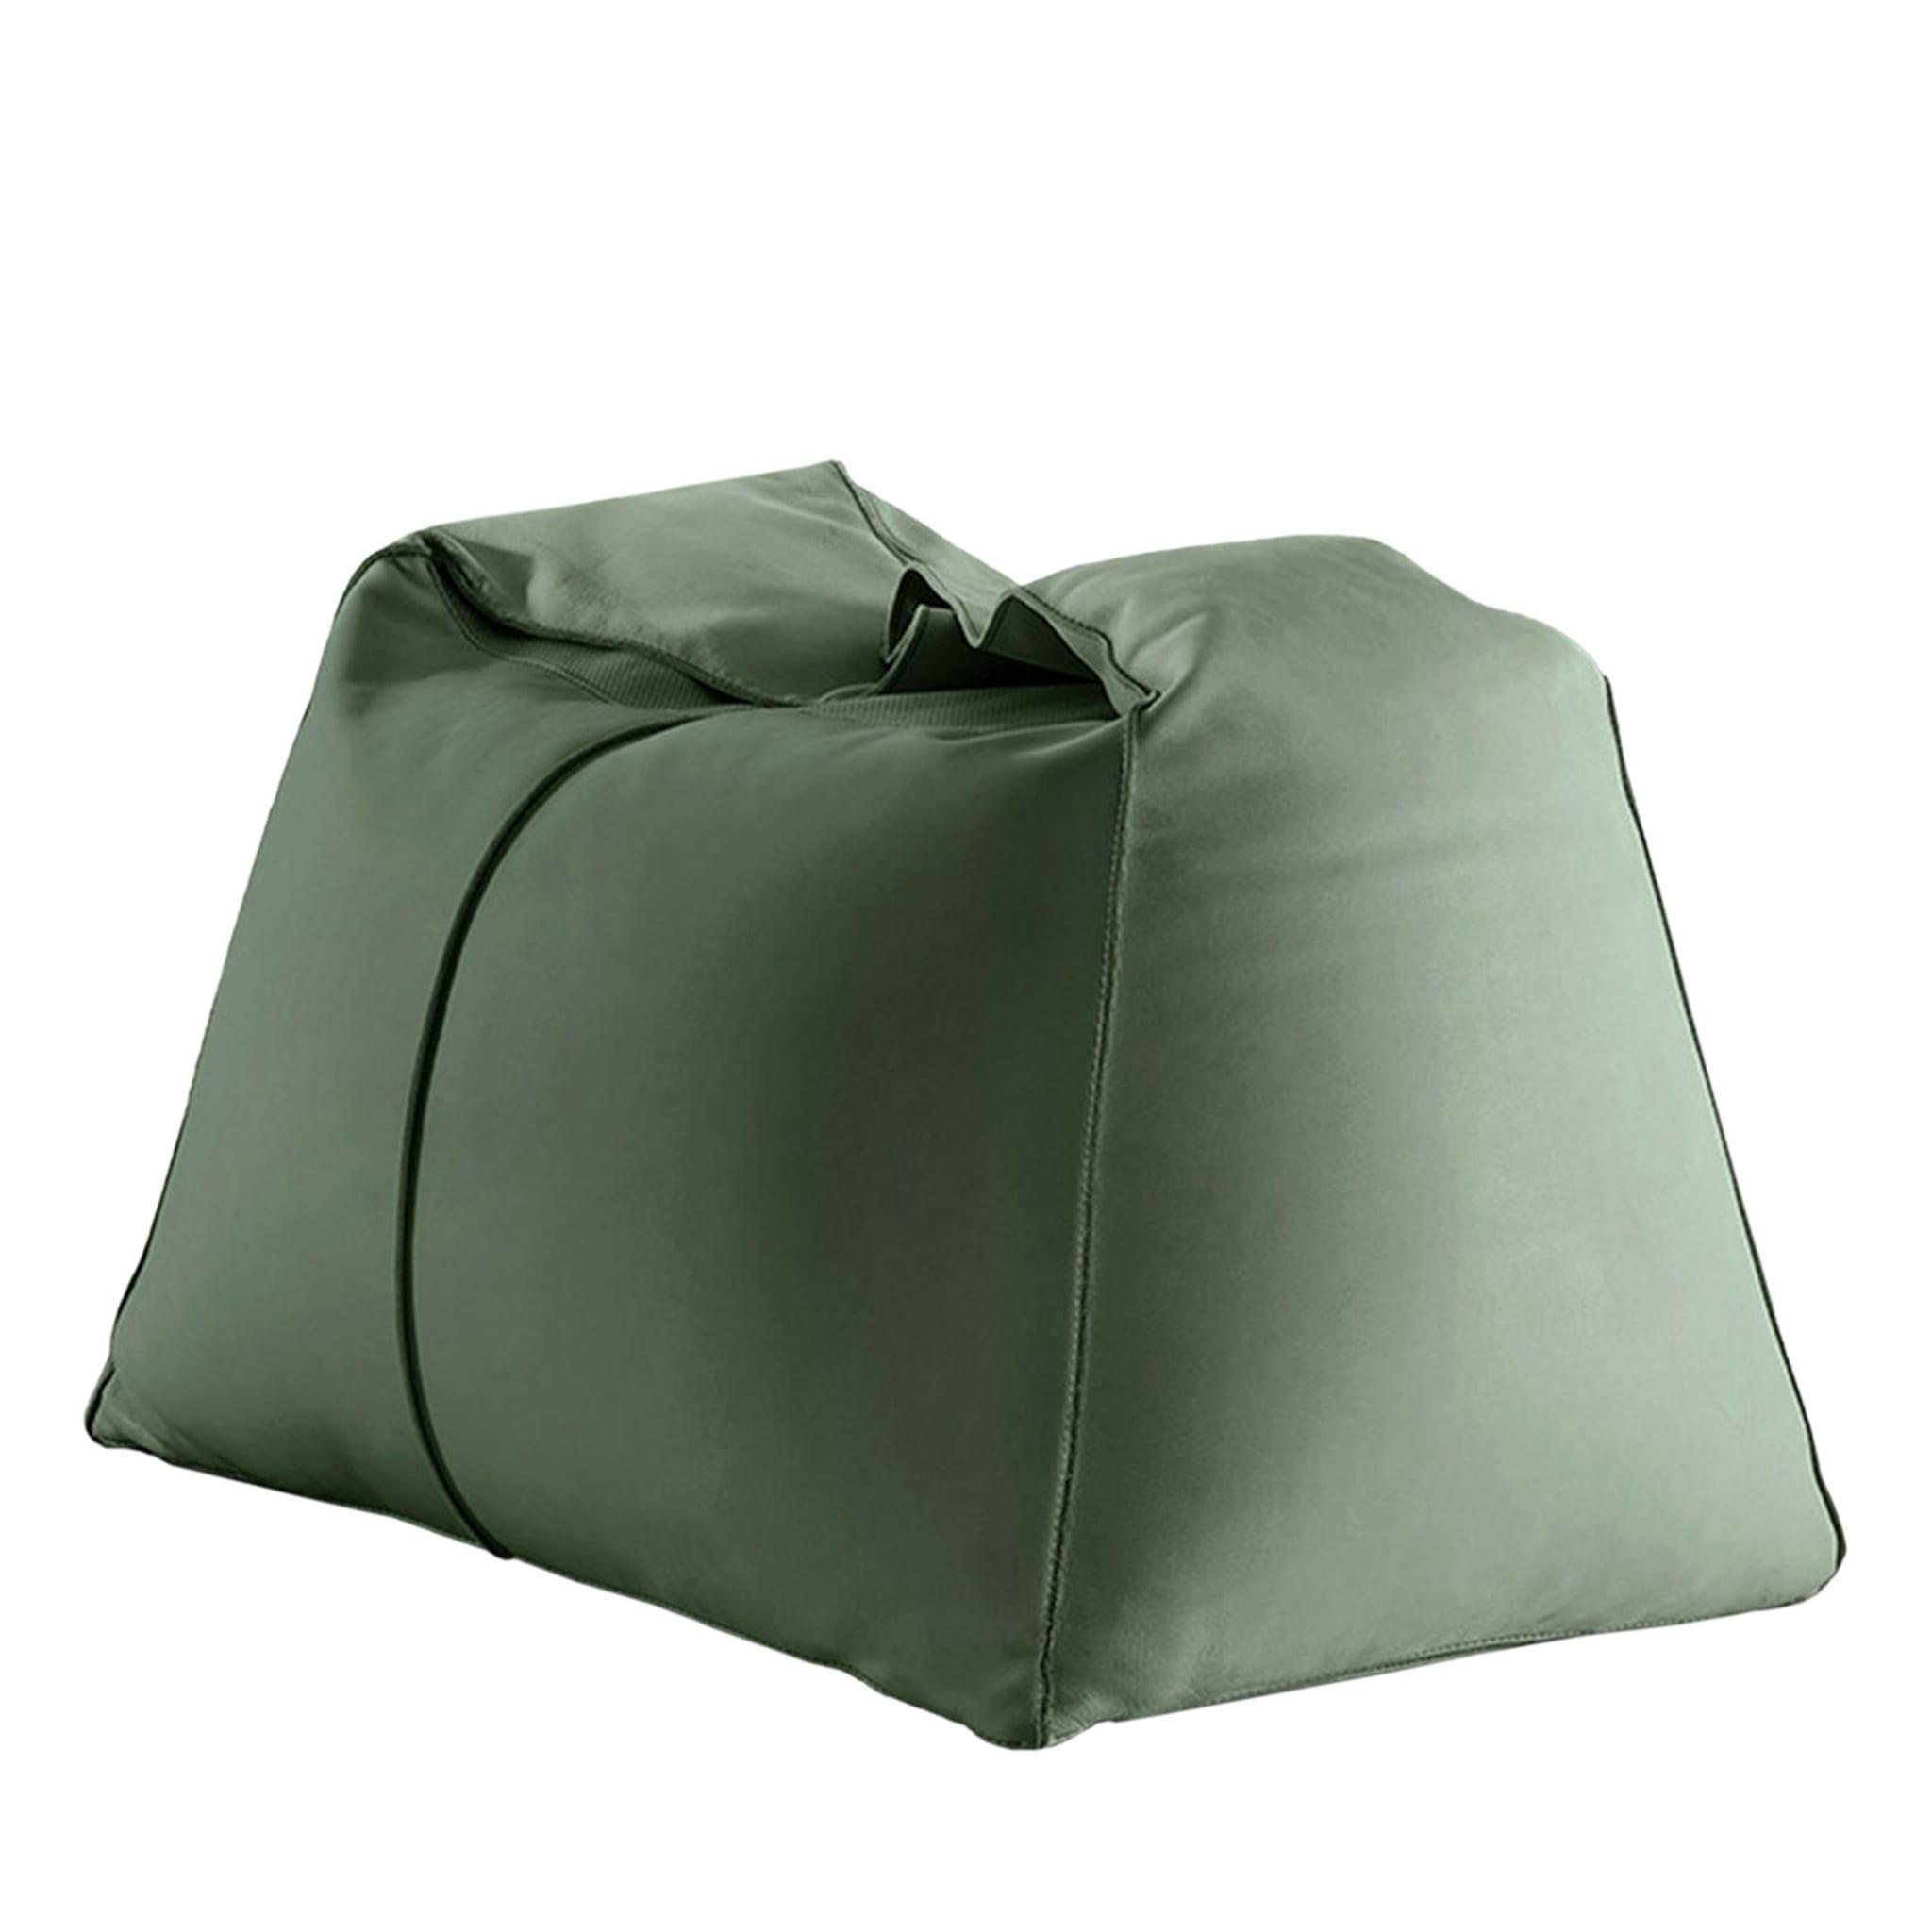 Green Bean Bag Chair